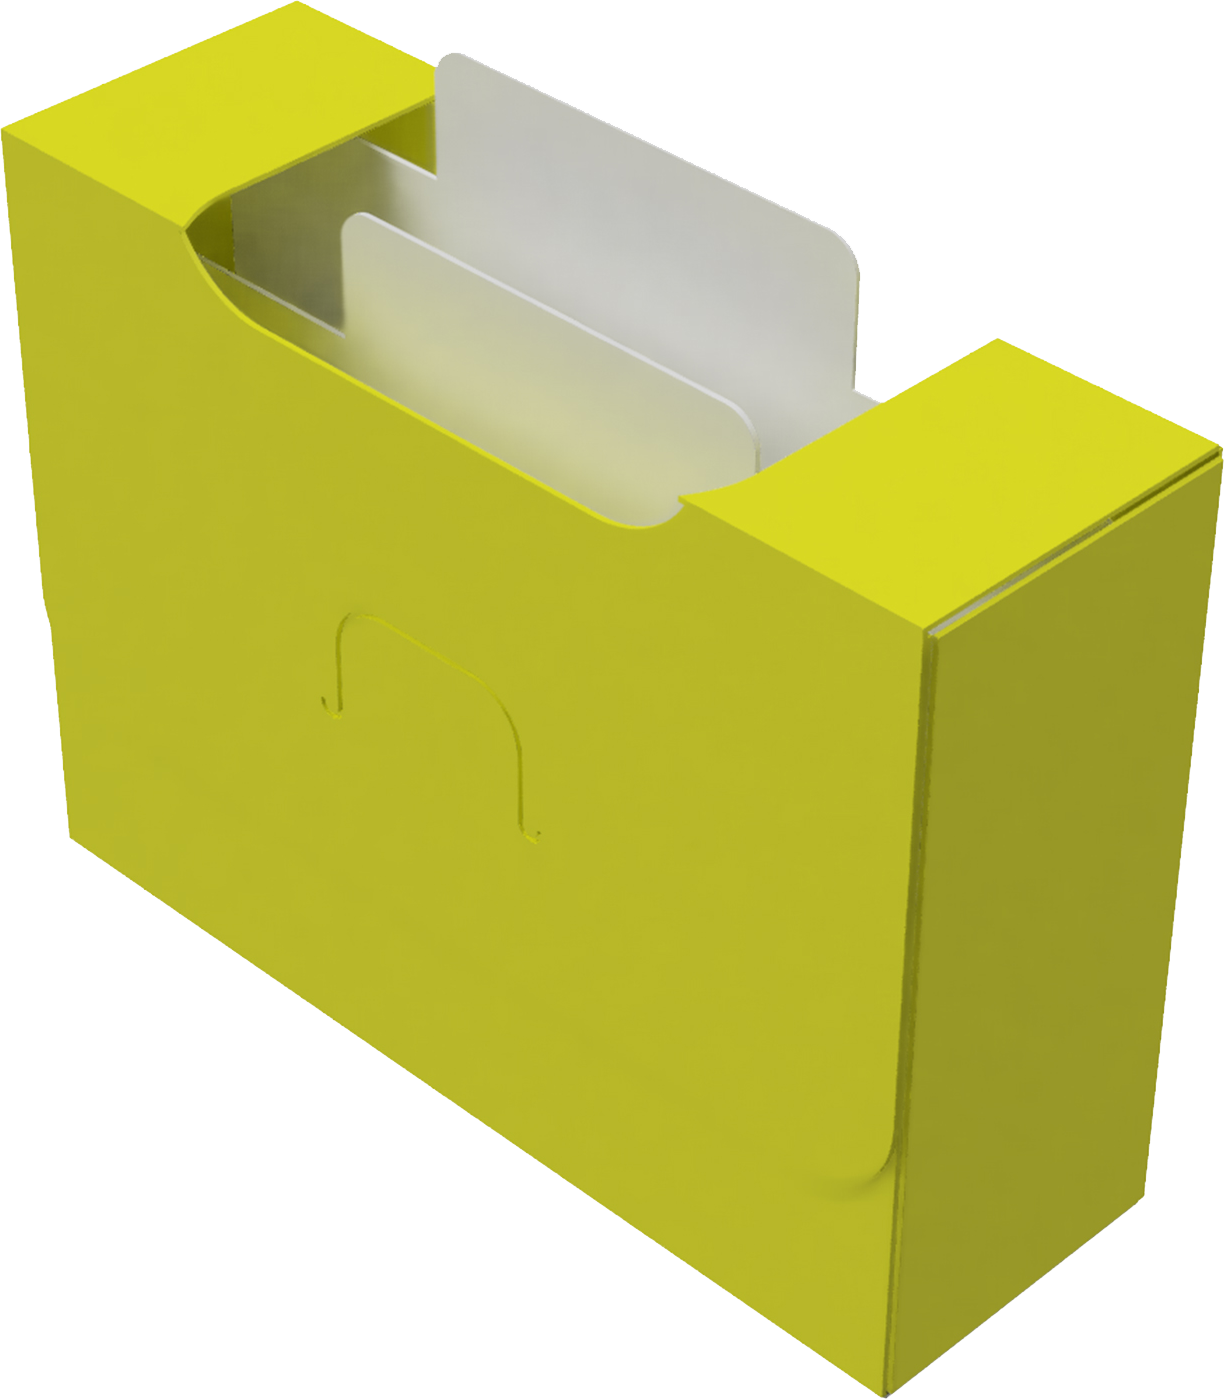 Картотека UniqCardFile Standart 30 mm (Желтый) (UCF St 30_yellow)